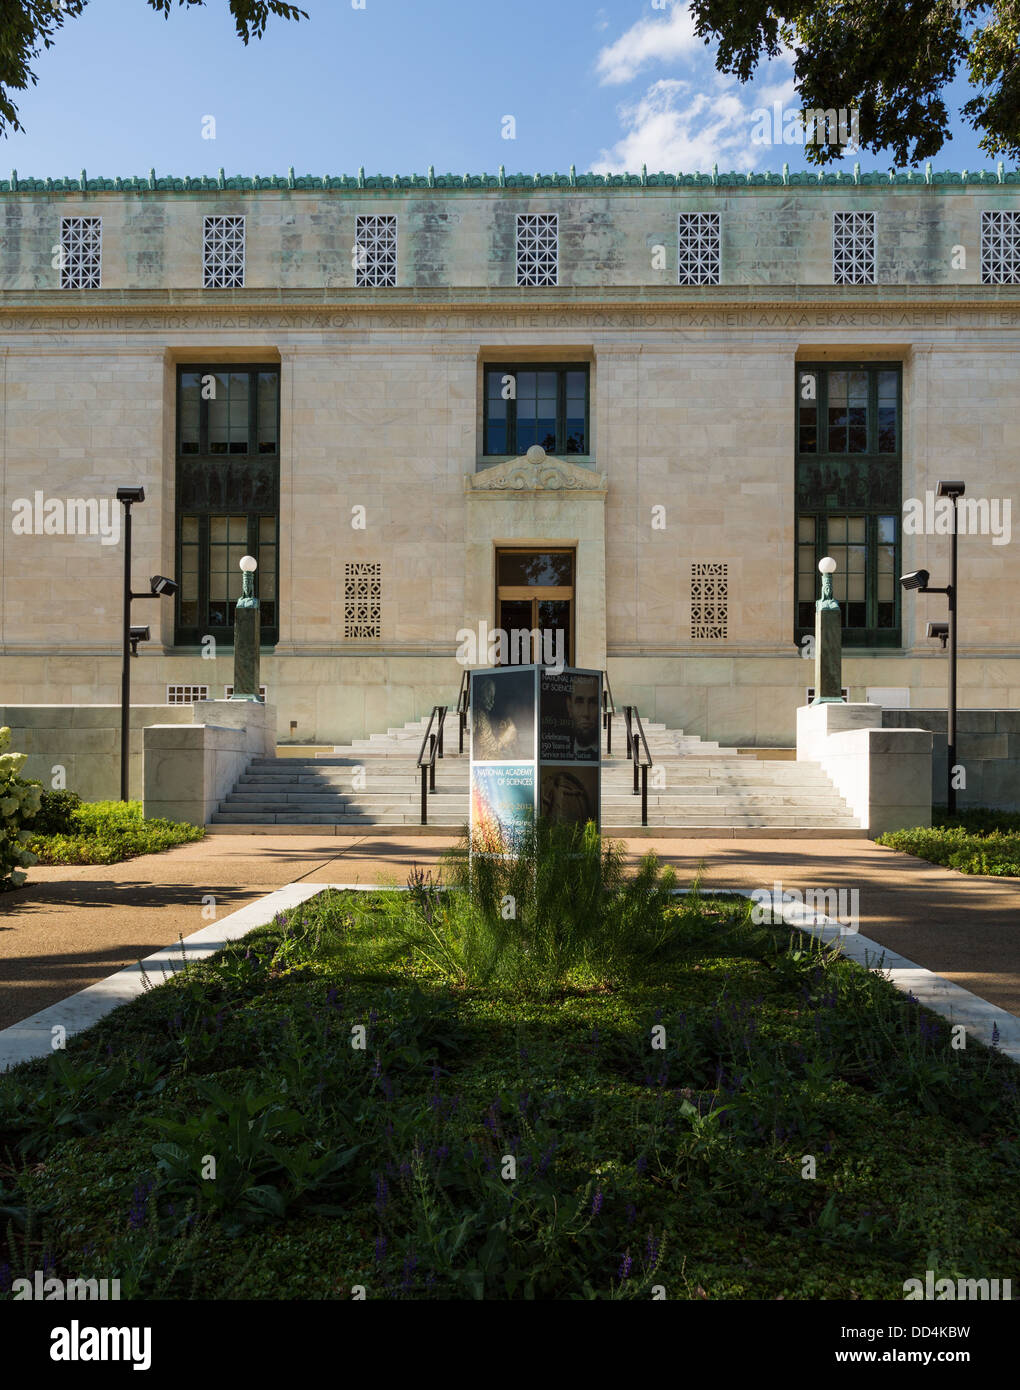 Historique de la National Academy of Sciences, Washington, DC, le National Mall, USA Banque D'Images